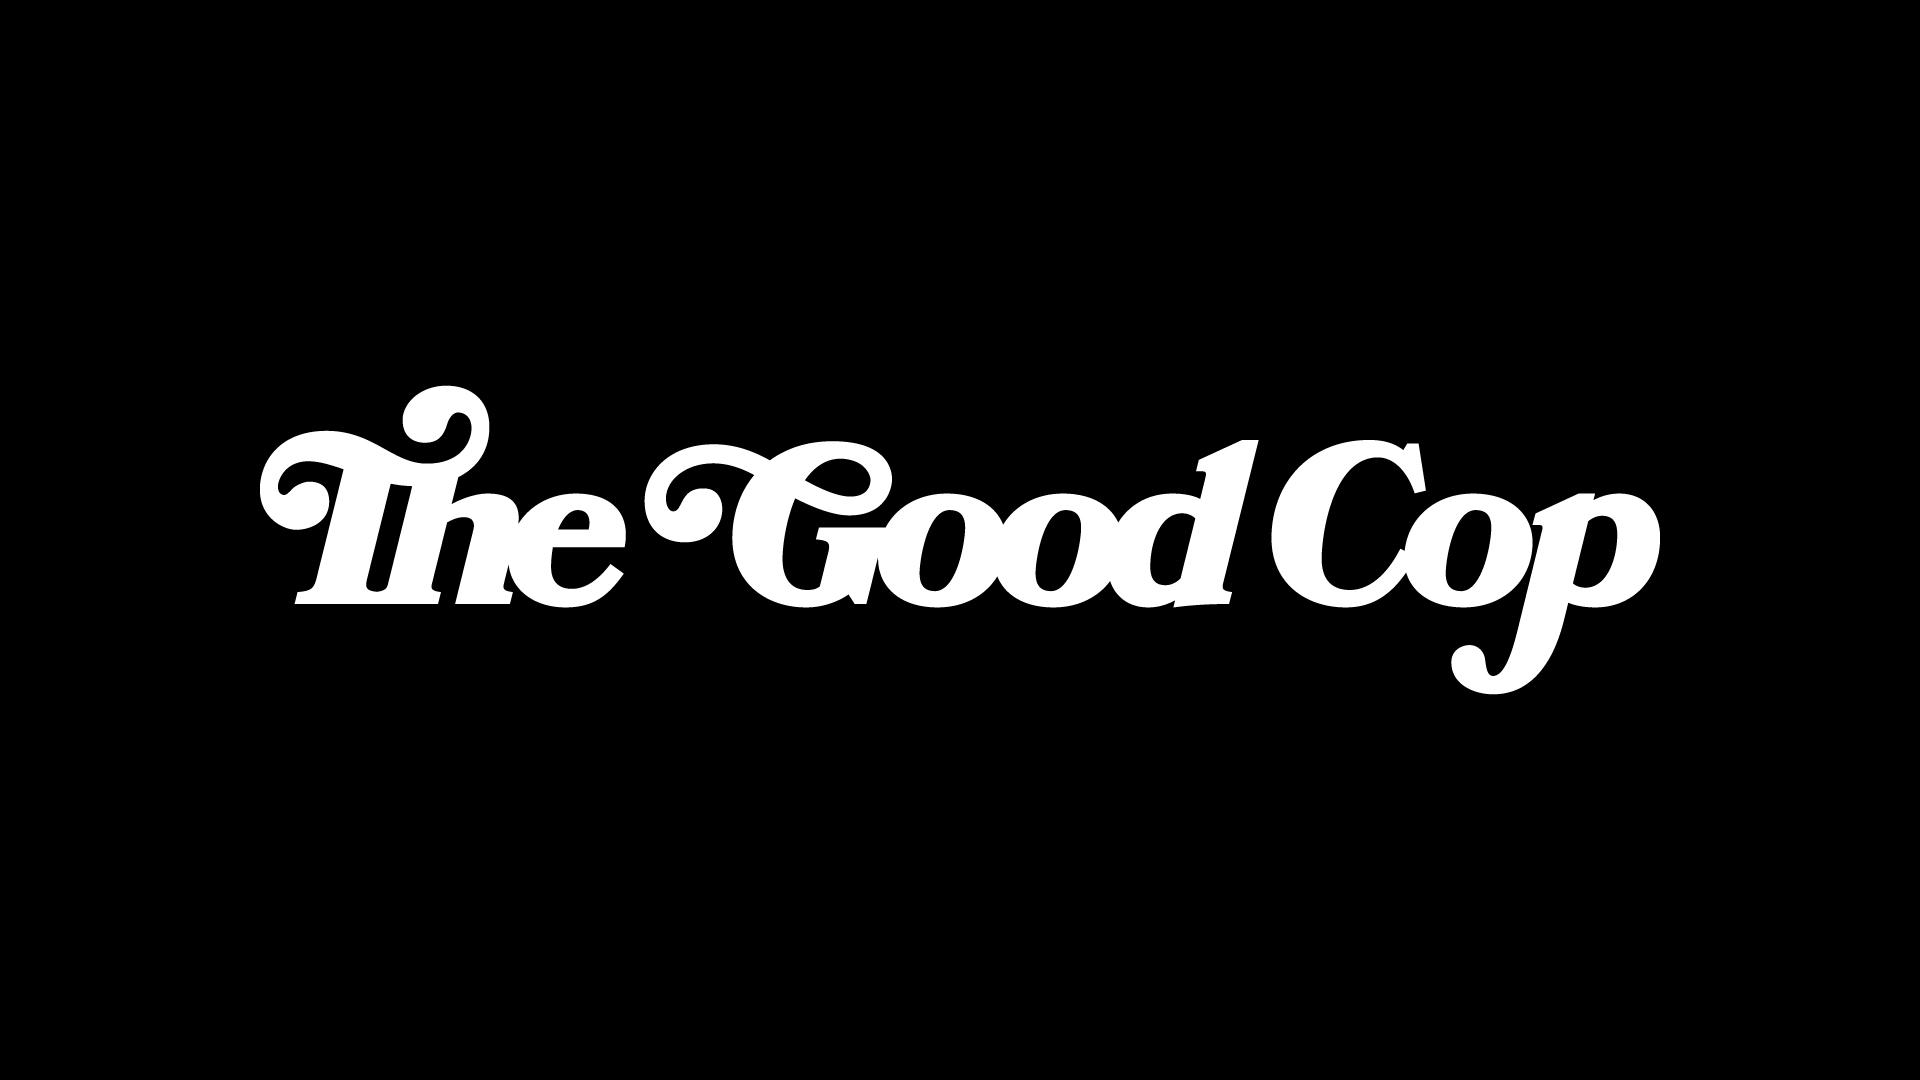 The Good Cop (2018)